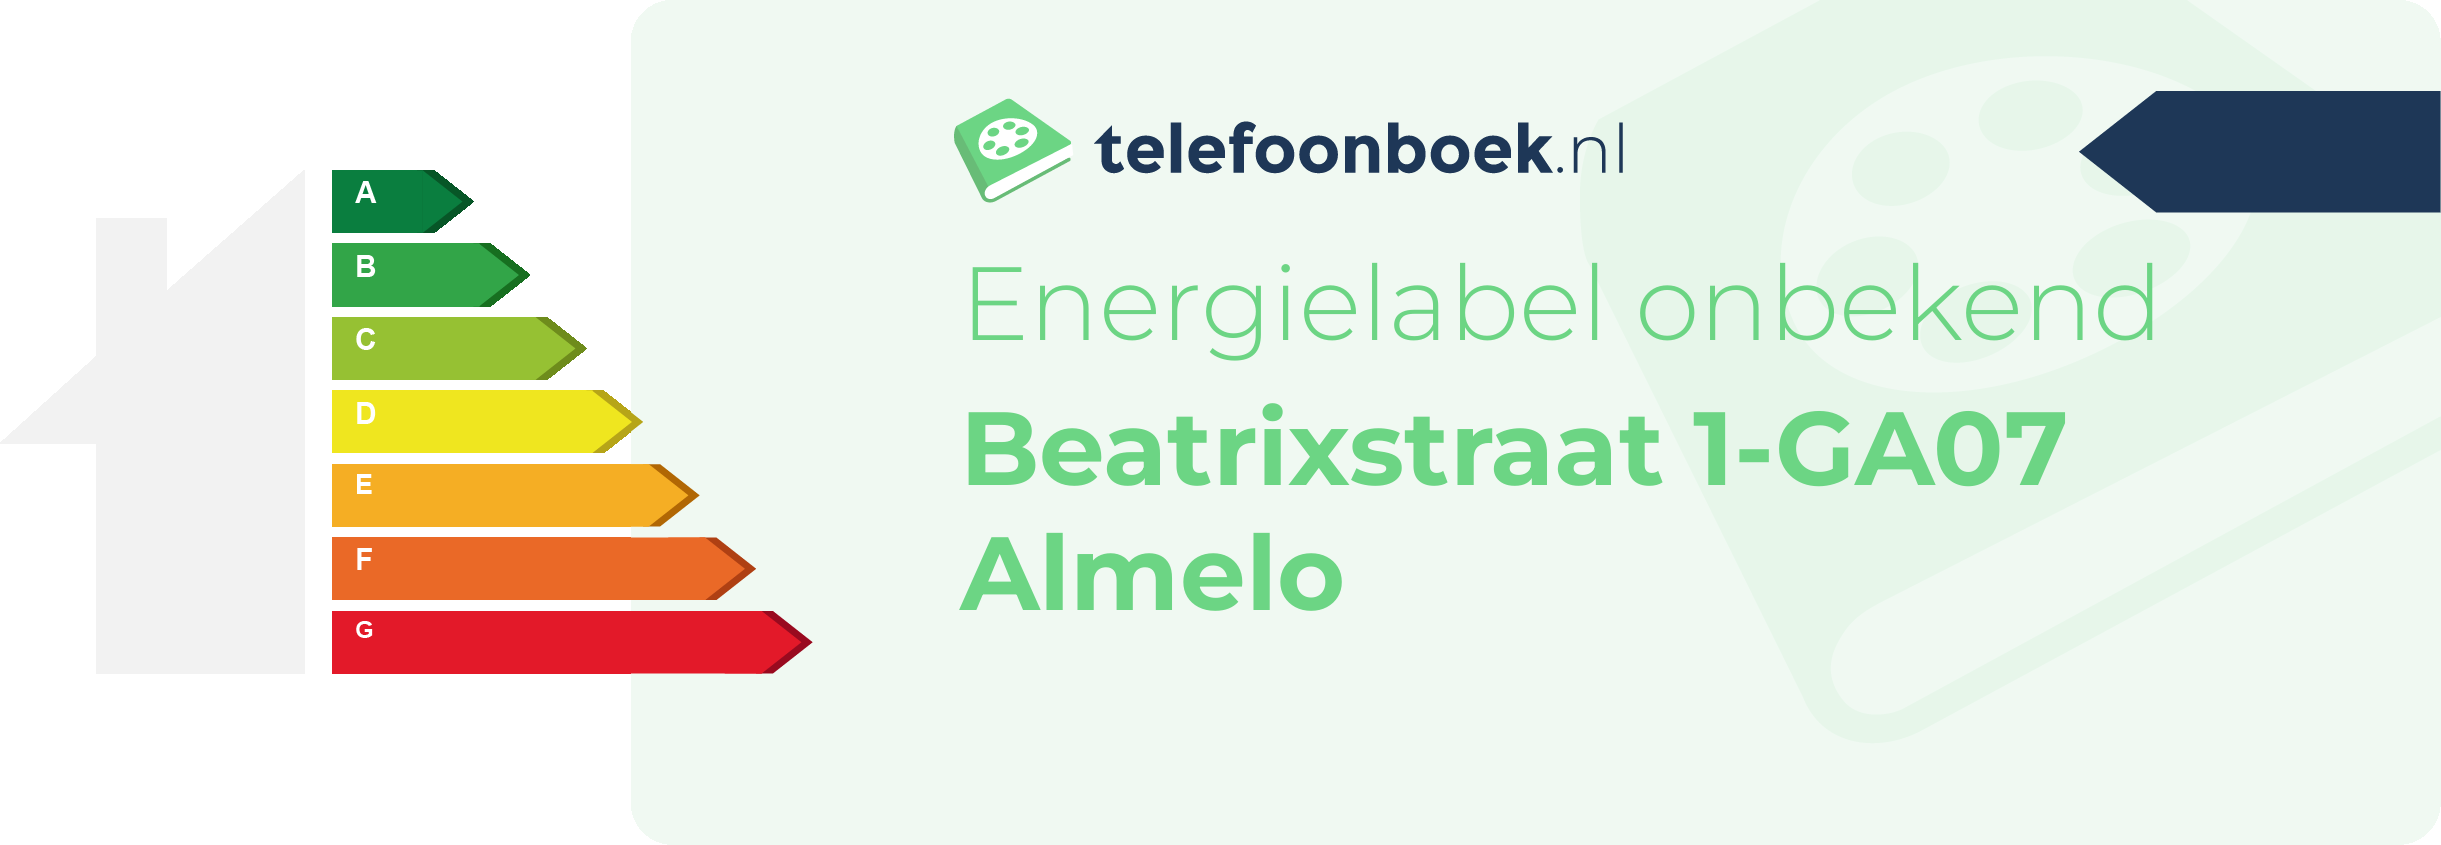 Energielabel Beatrixstraat 1-GA07 Almelo